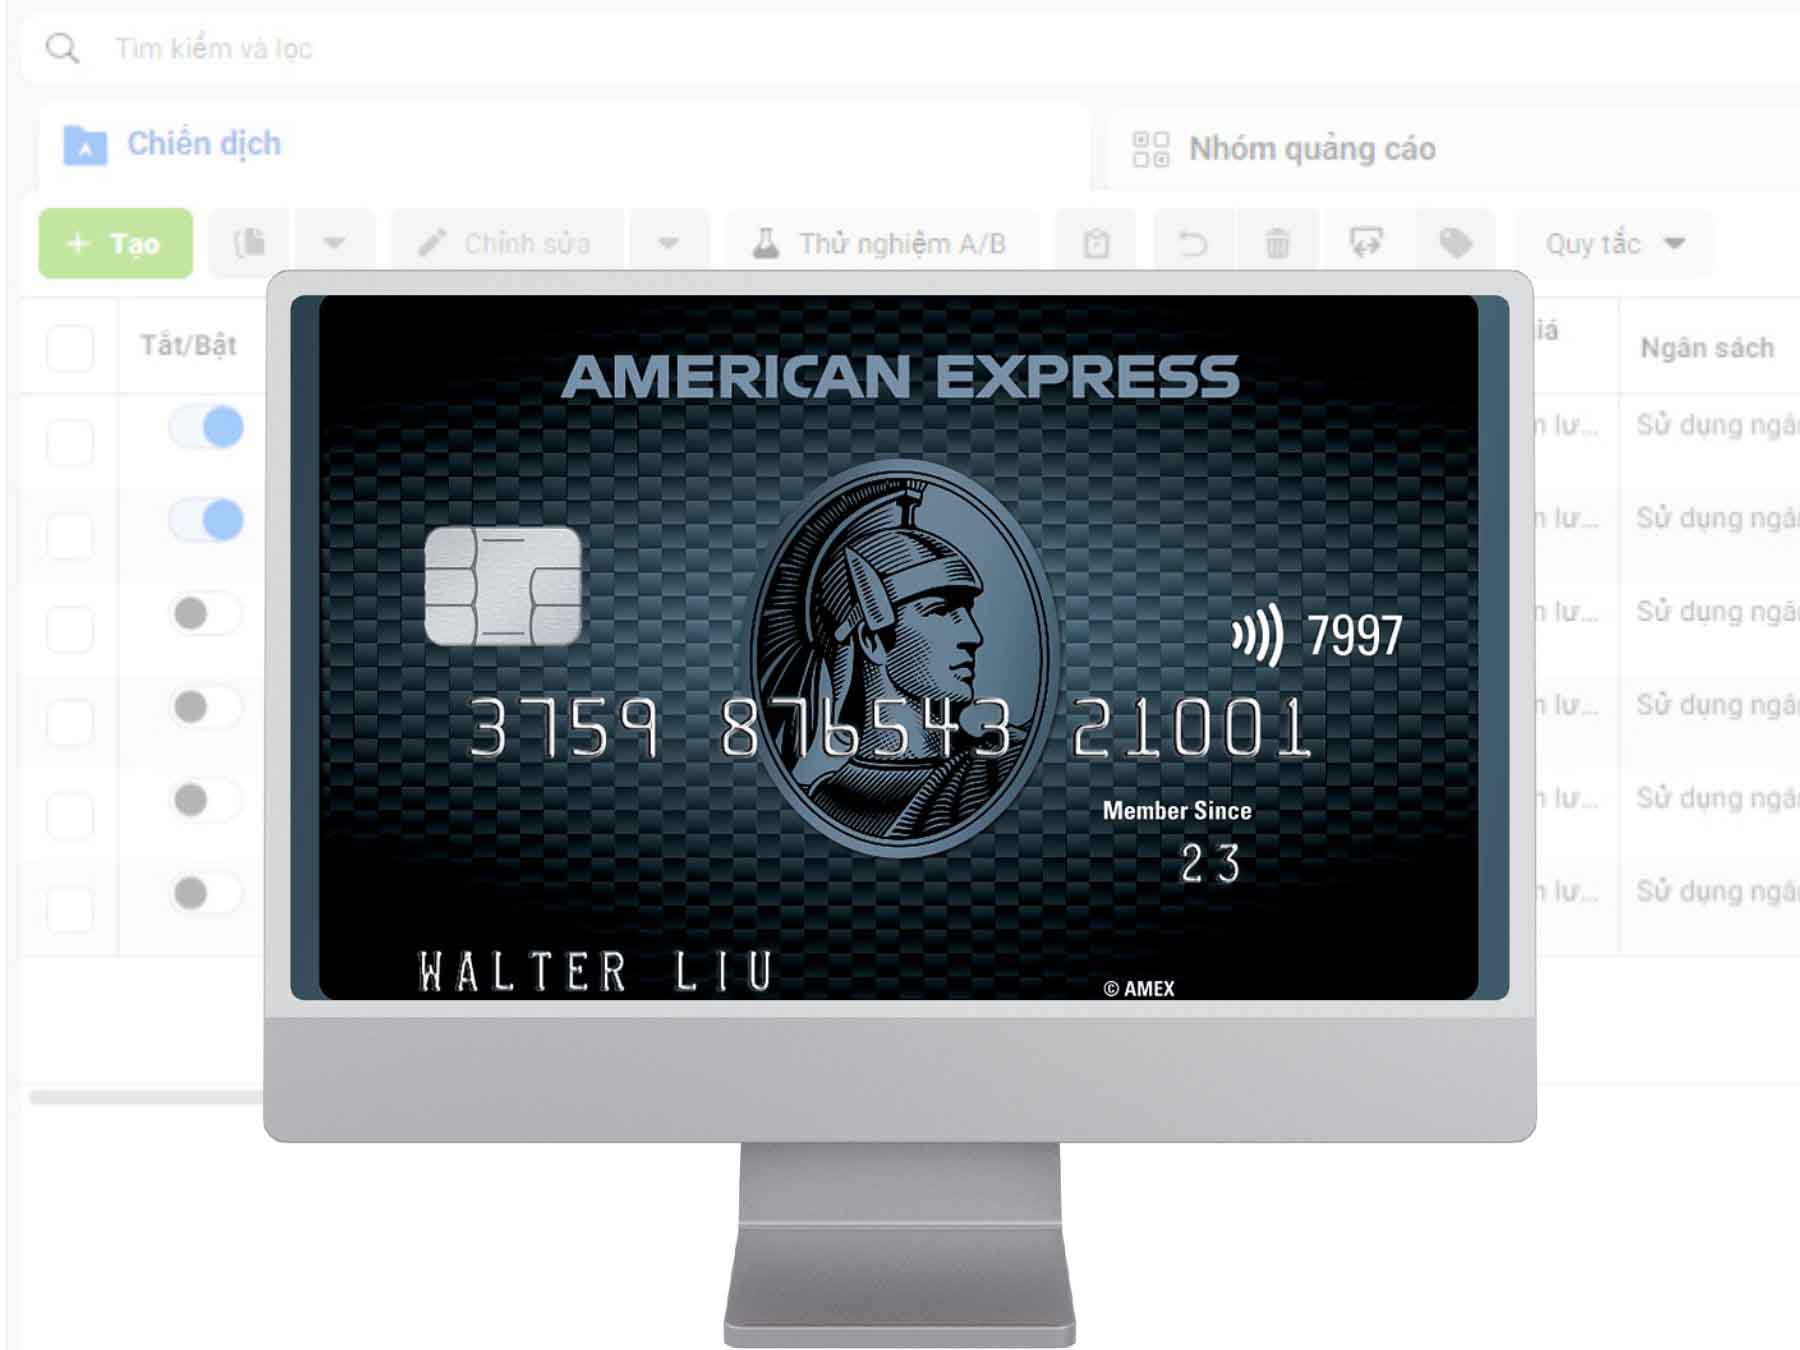 Cách nạp thêm tiền vào tài khoản quảng cáo Facebook qua American Express